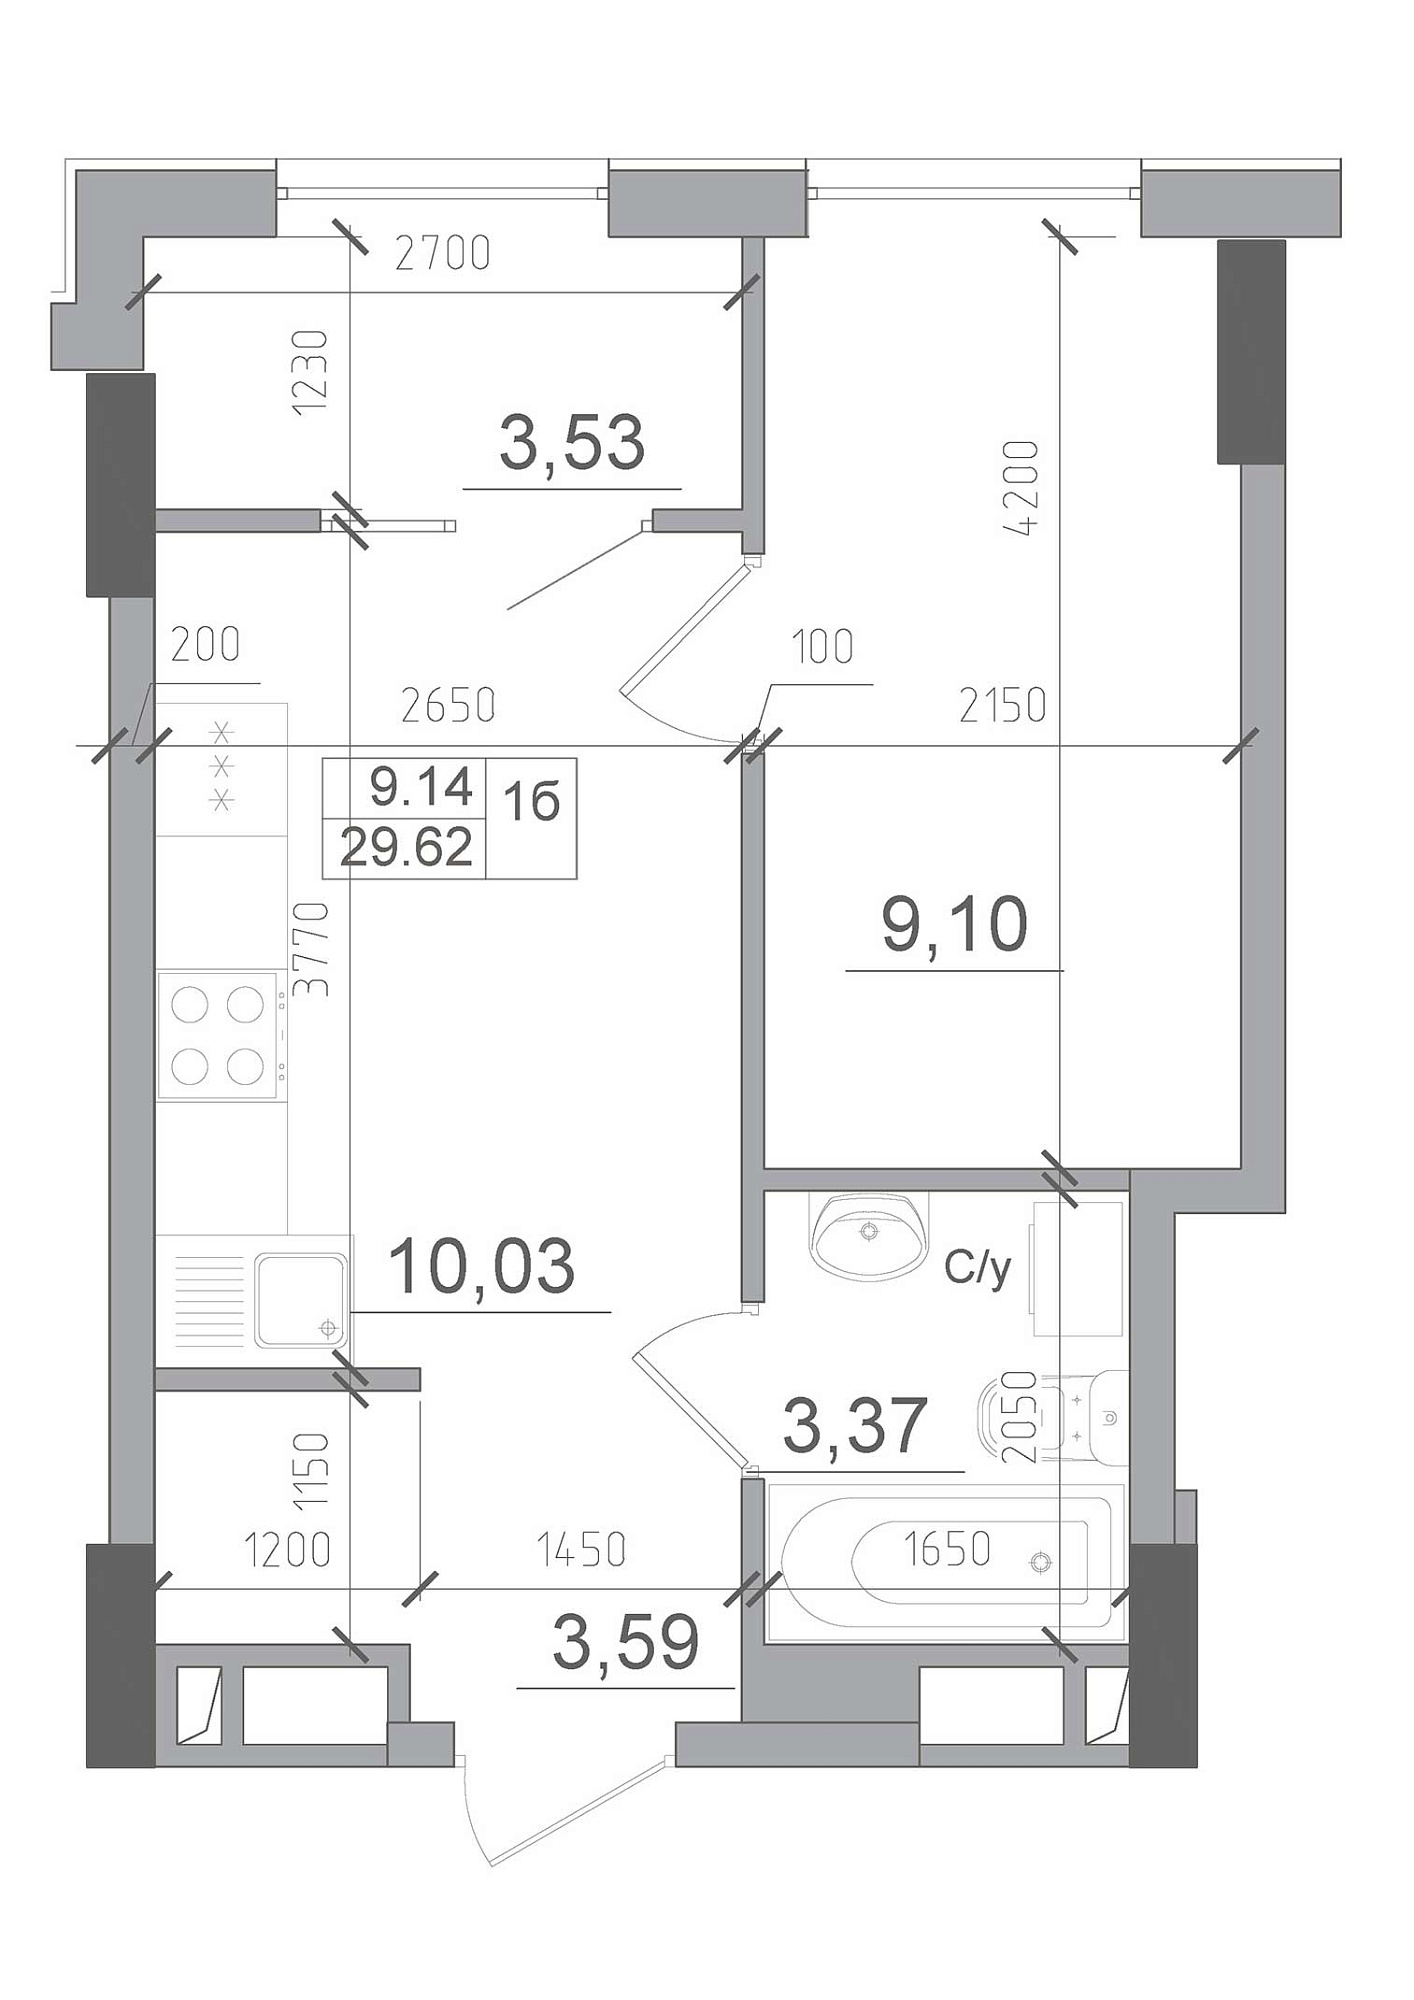 Планування 1-к квартира площею 29.62м2, AB-22-06/00002.